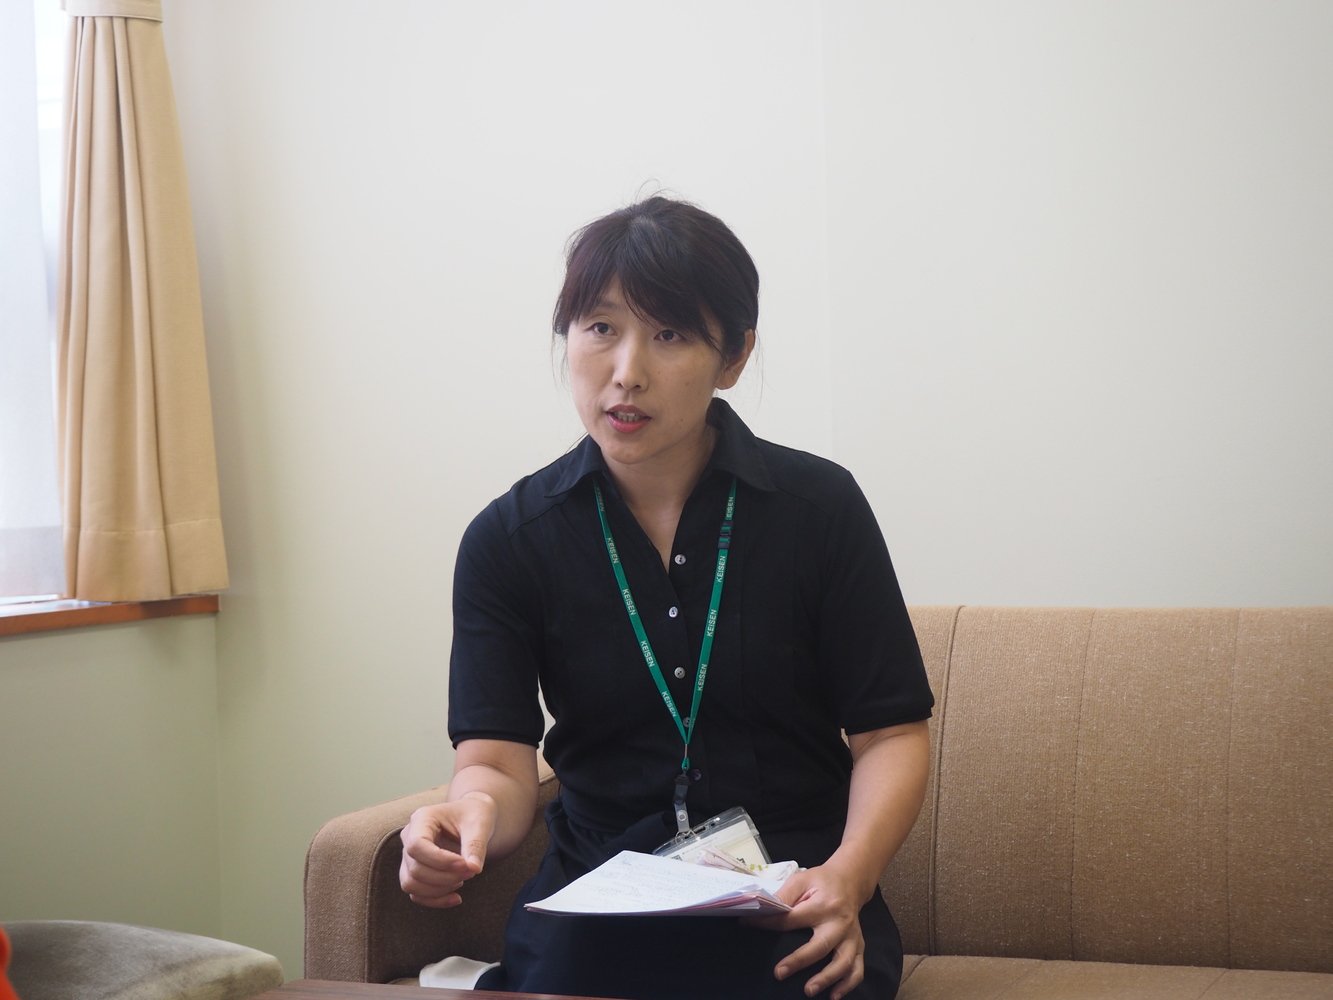 恵泉女学園中学校　先生インタビュー「自分が損をしても、人のために何かしたい」と思える人になってほしい37